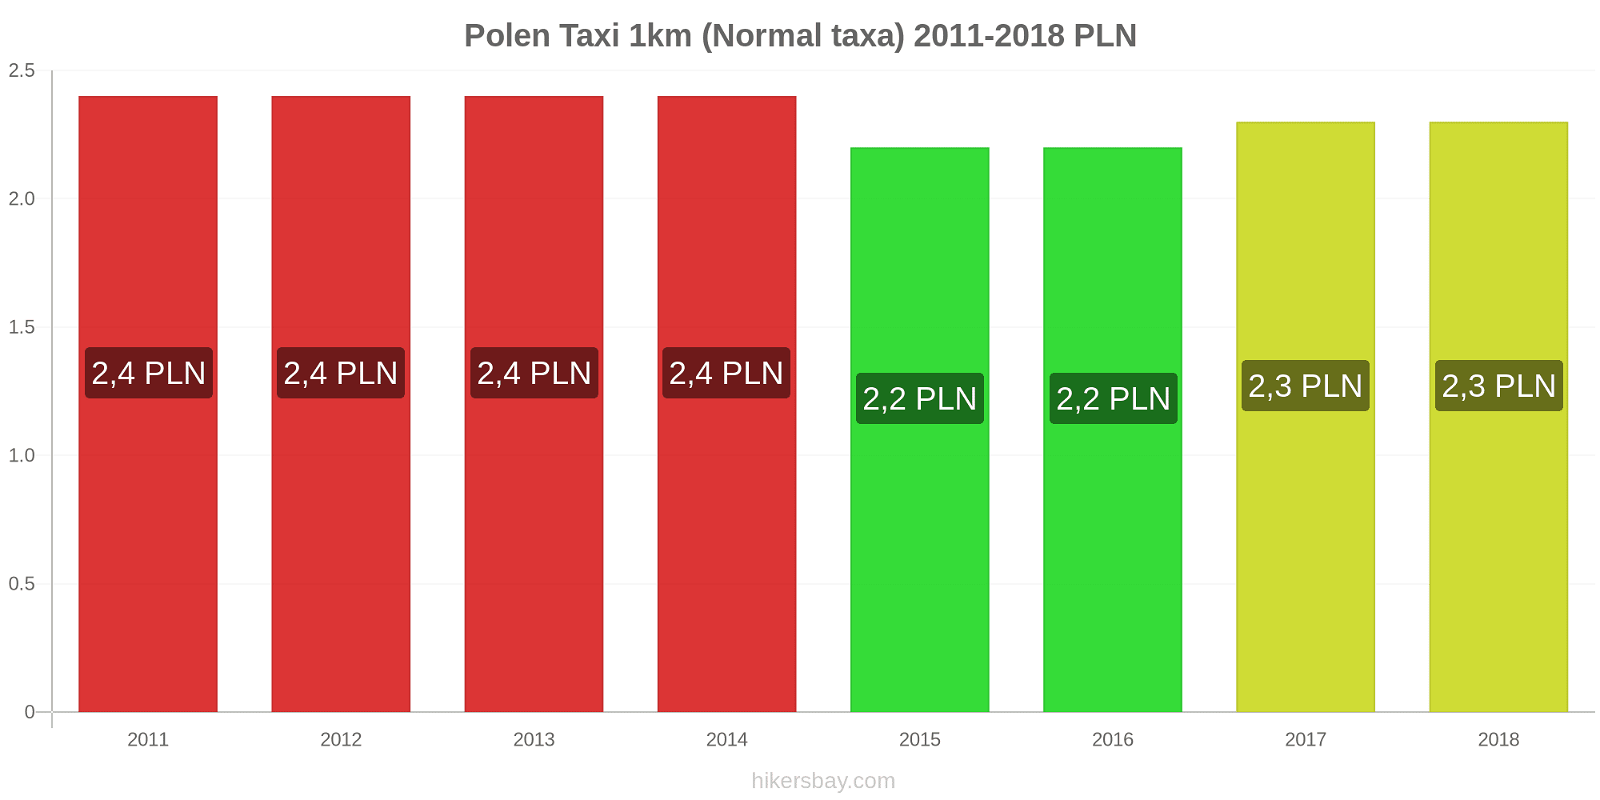 Polen prisändringar Taxi 1km (Normal taxa) hikersbay.com